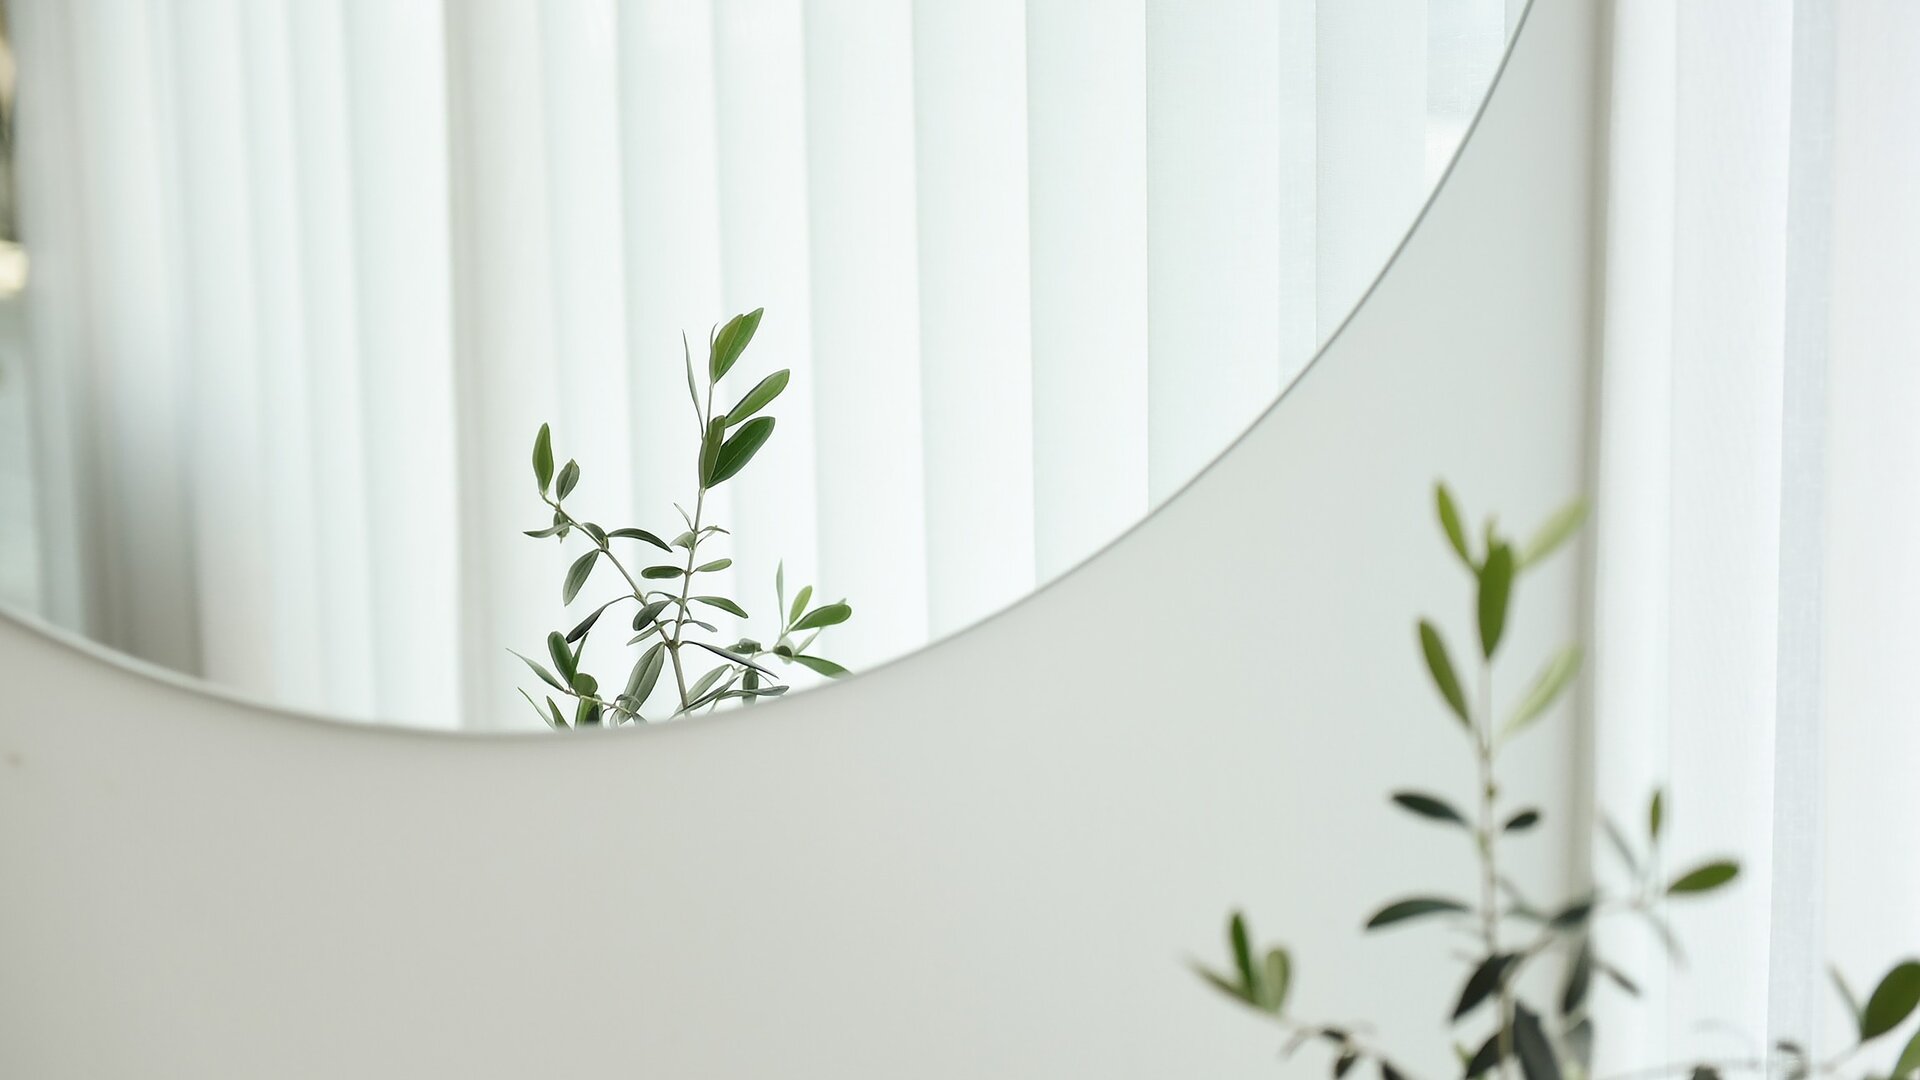 Nahaufnahme von unteren Teil eines runden Spiegels auf weißer Wand, mit der Spiegelung von Pflanzenblättern.